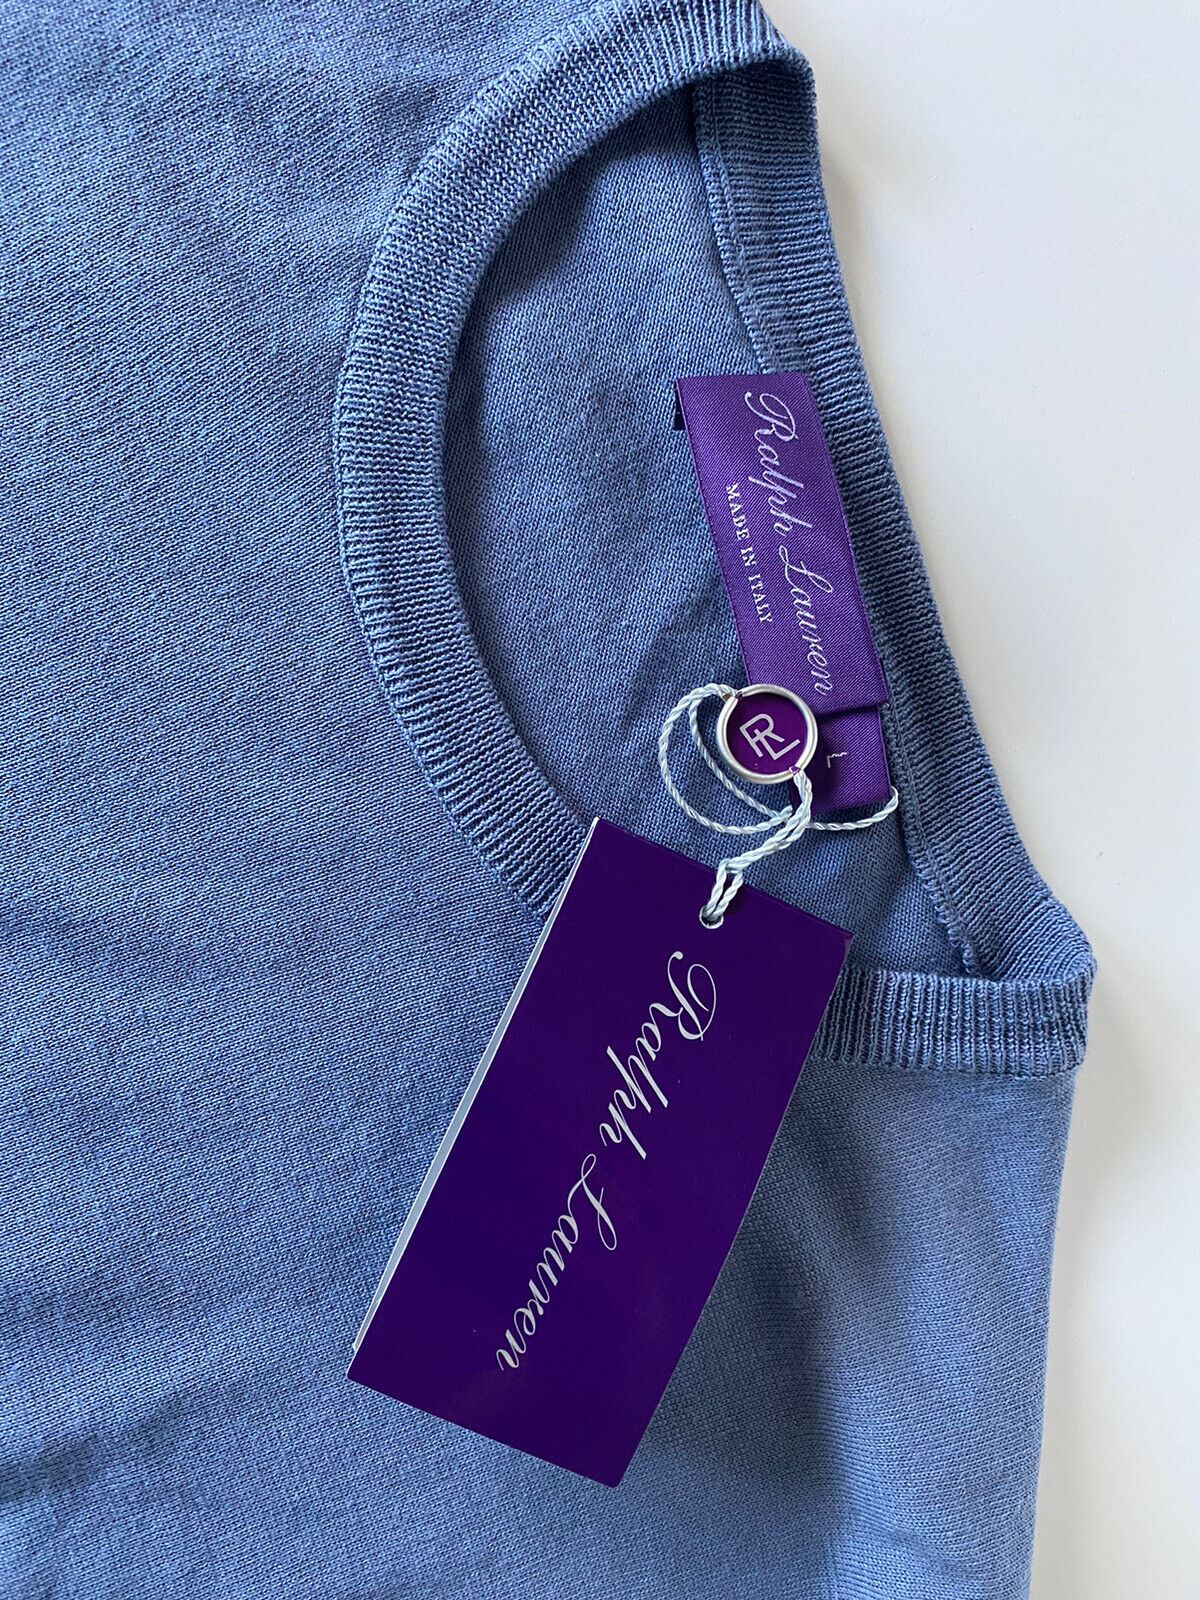 Neu mit Etikett: 695 $ Ralph Lauren Purple Label Baumwollpullover in Blau, Größe L, hergestellt in Italien